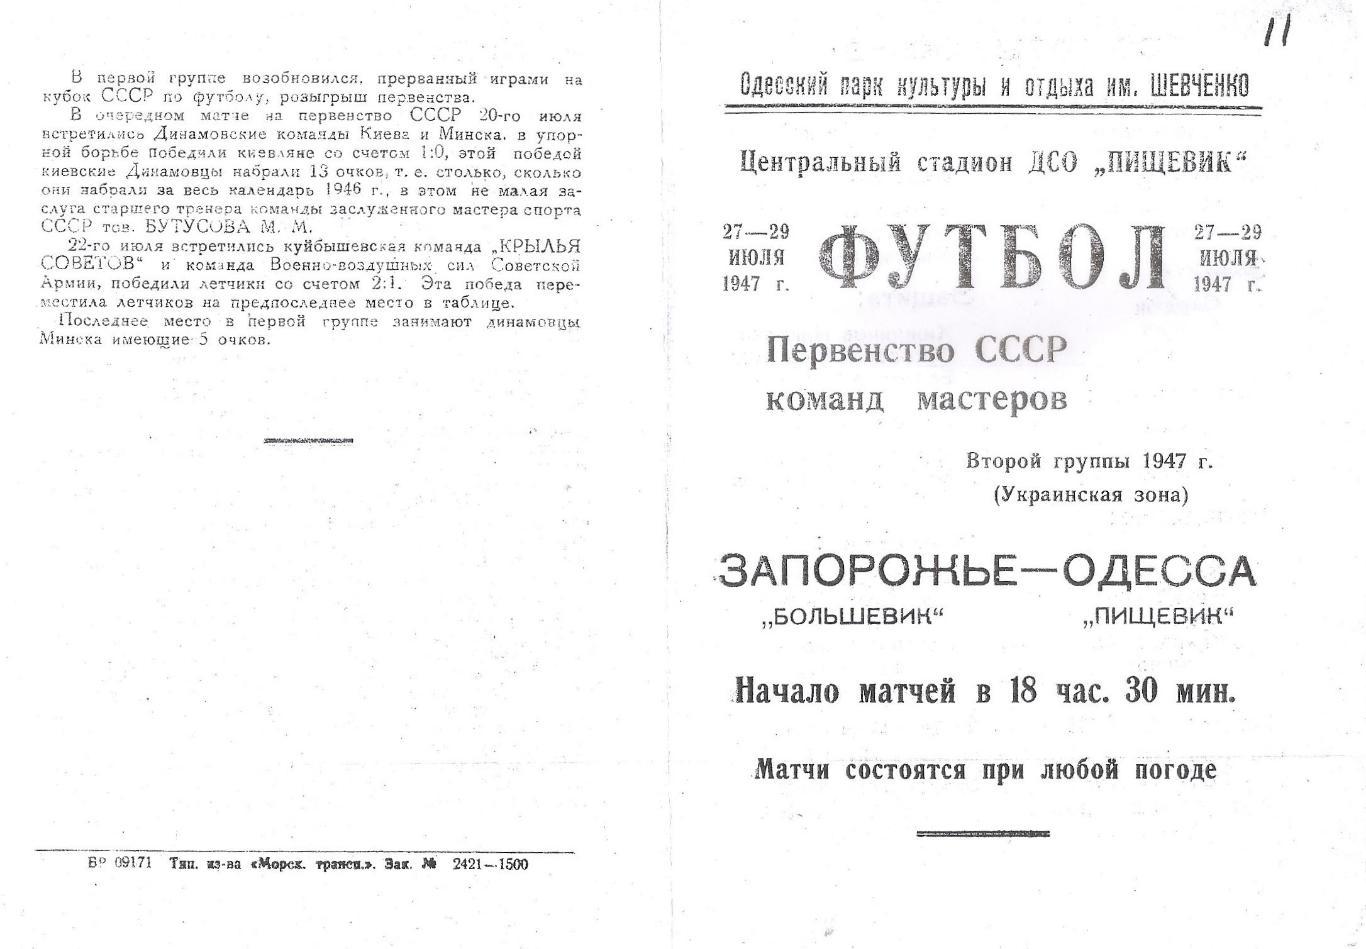 Пищевик Одесса - Большевик Запорожье 27 и 29.07.1947г. (копия)